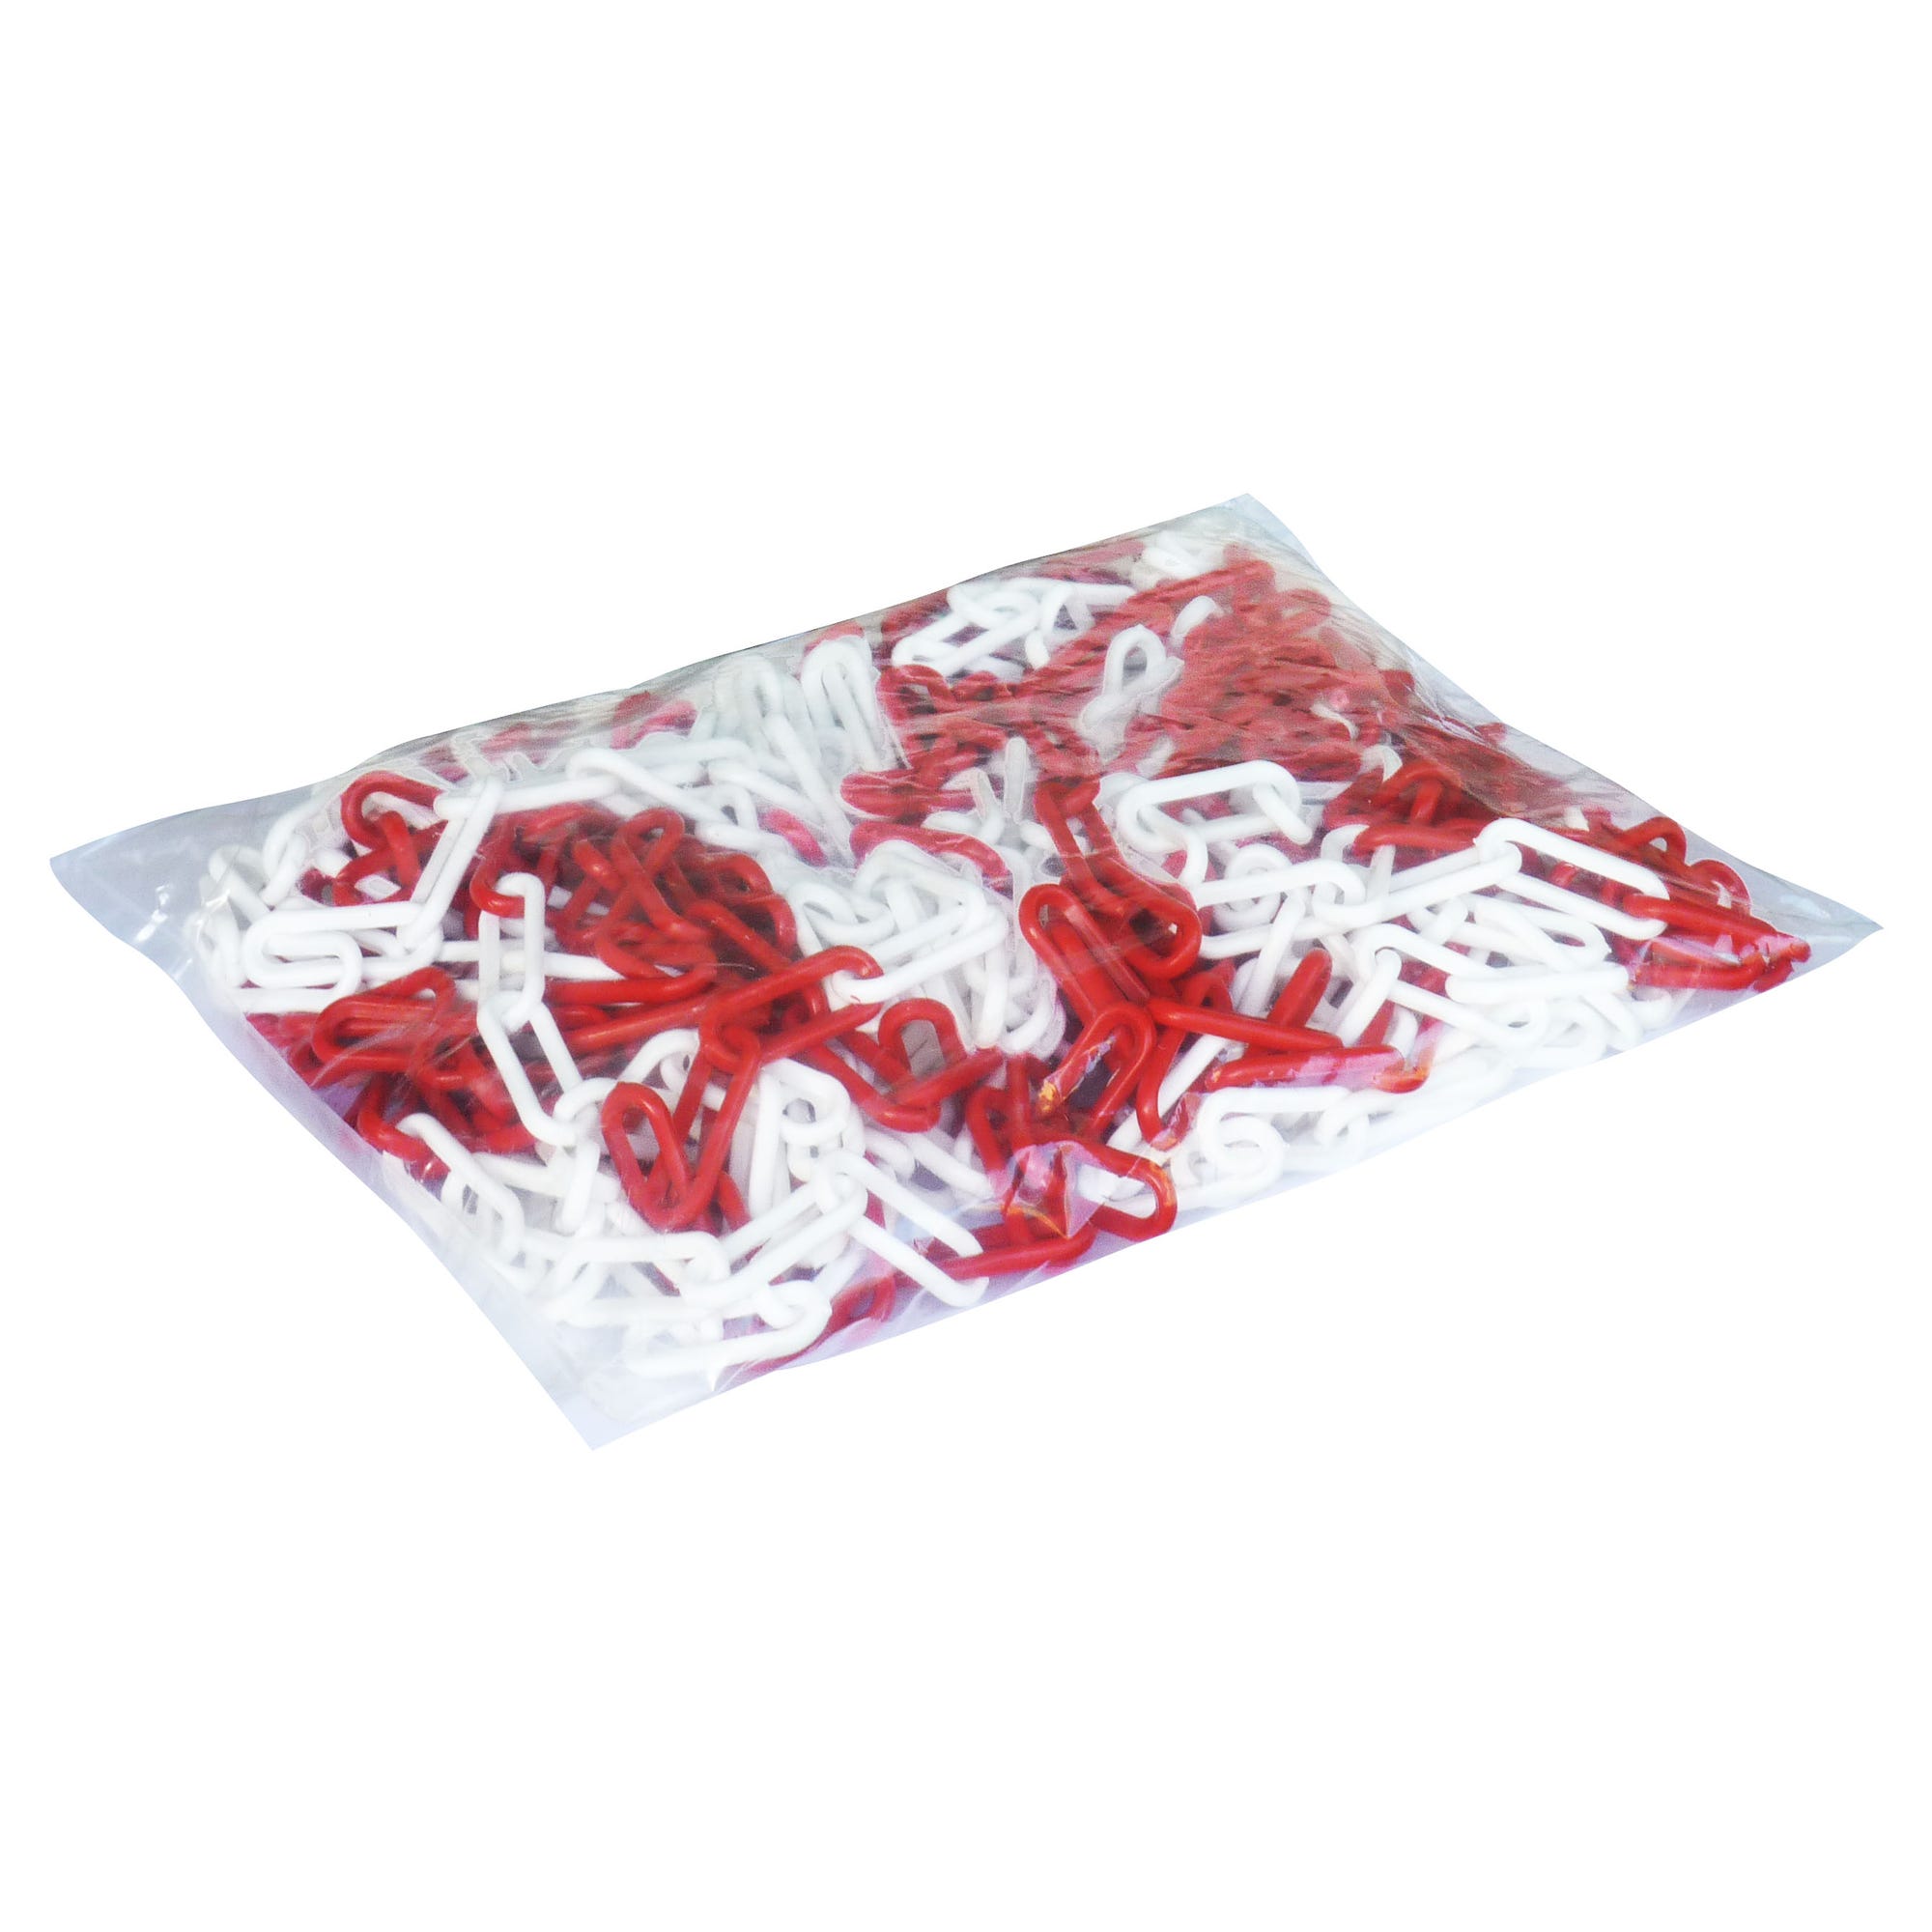 Chaîne plastique rouge et blanc 25 m - Ø 6 mm 0